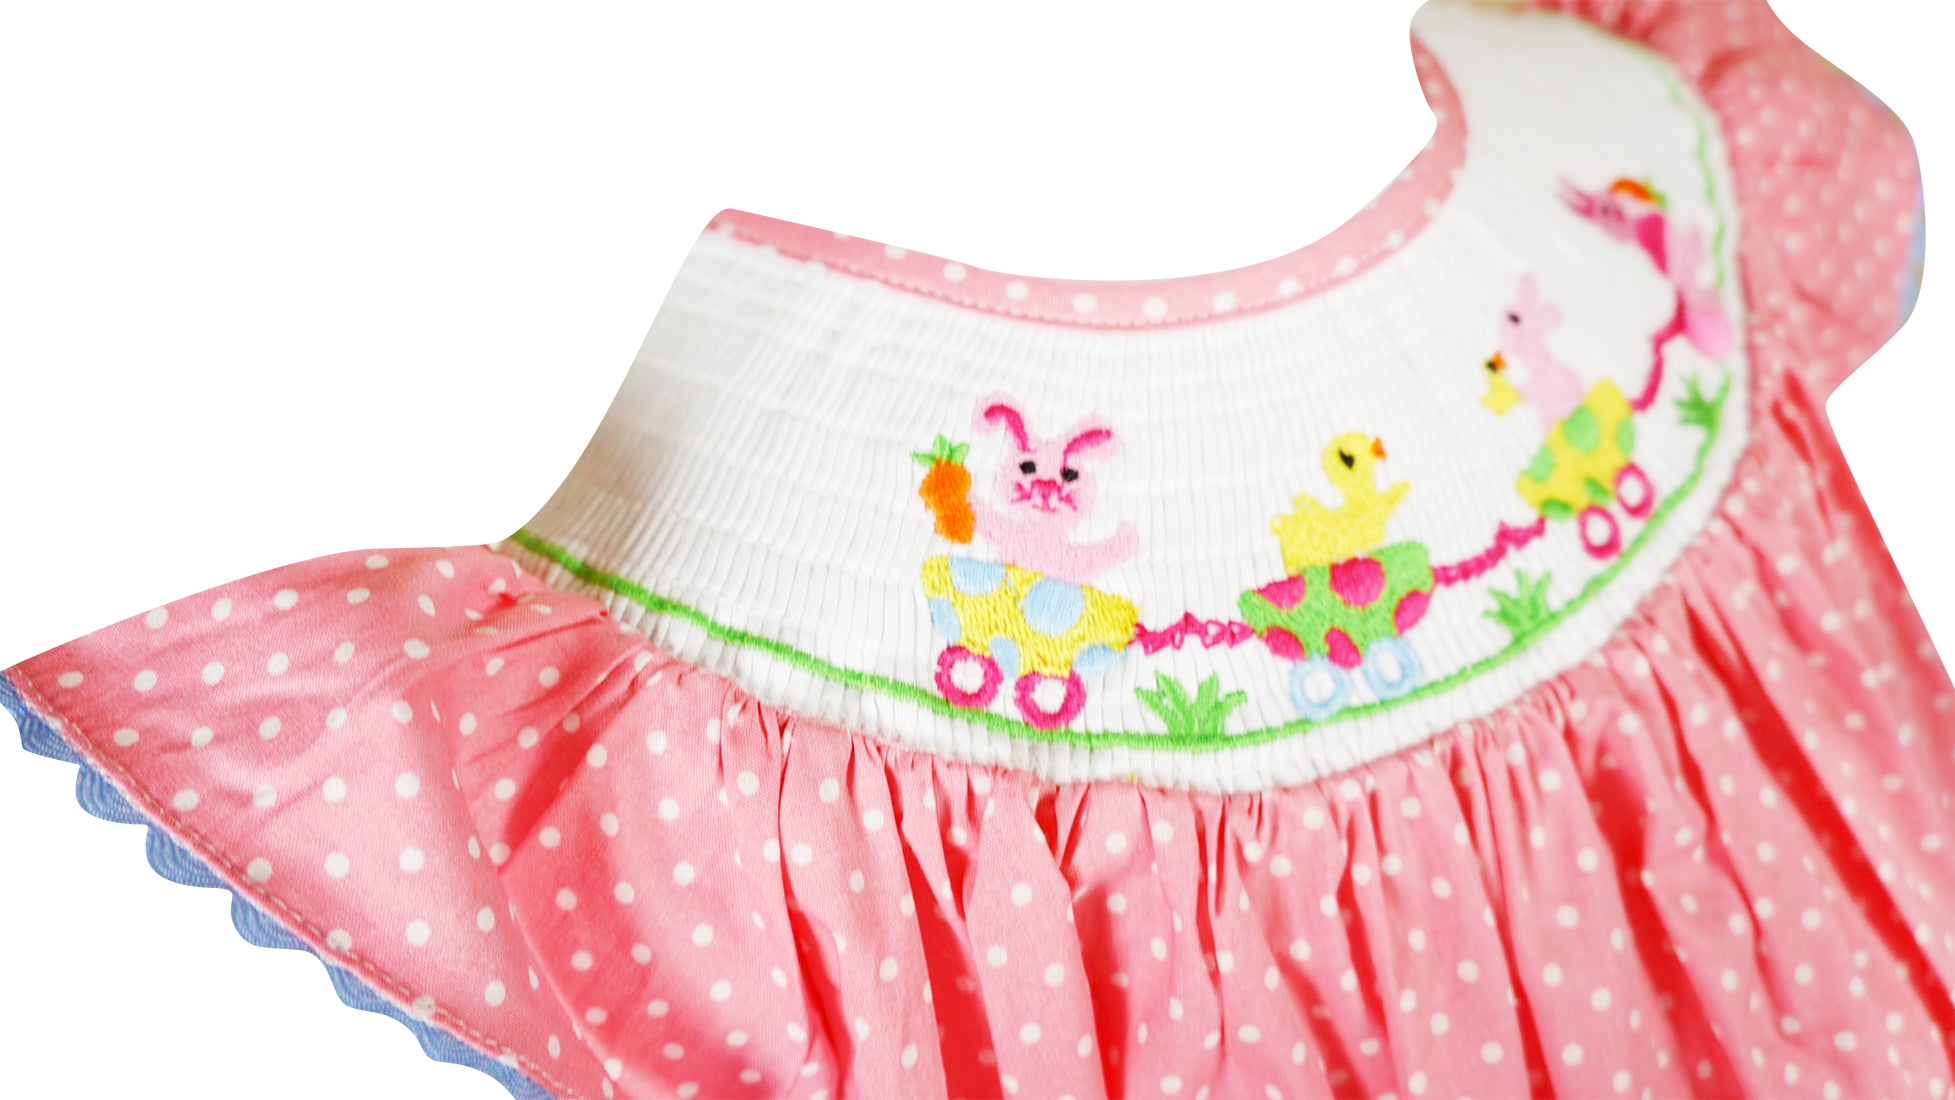 Baby Toddler Little Girls Easter Bunny Polka Dot Bishop Dress - Coral - Angeline Kids